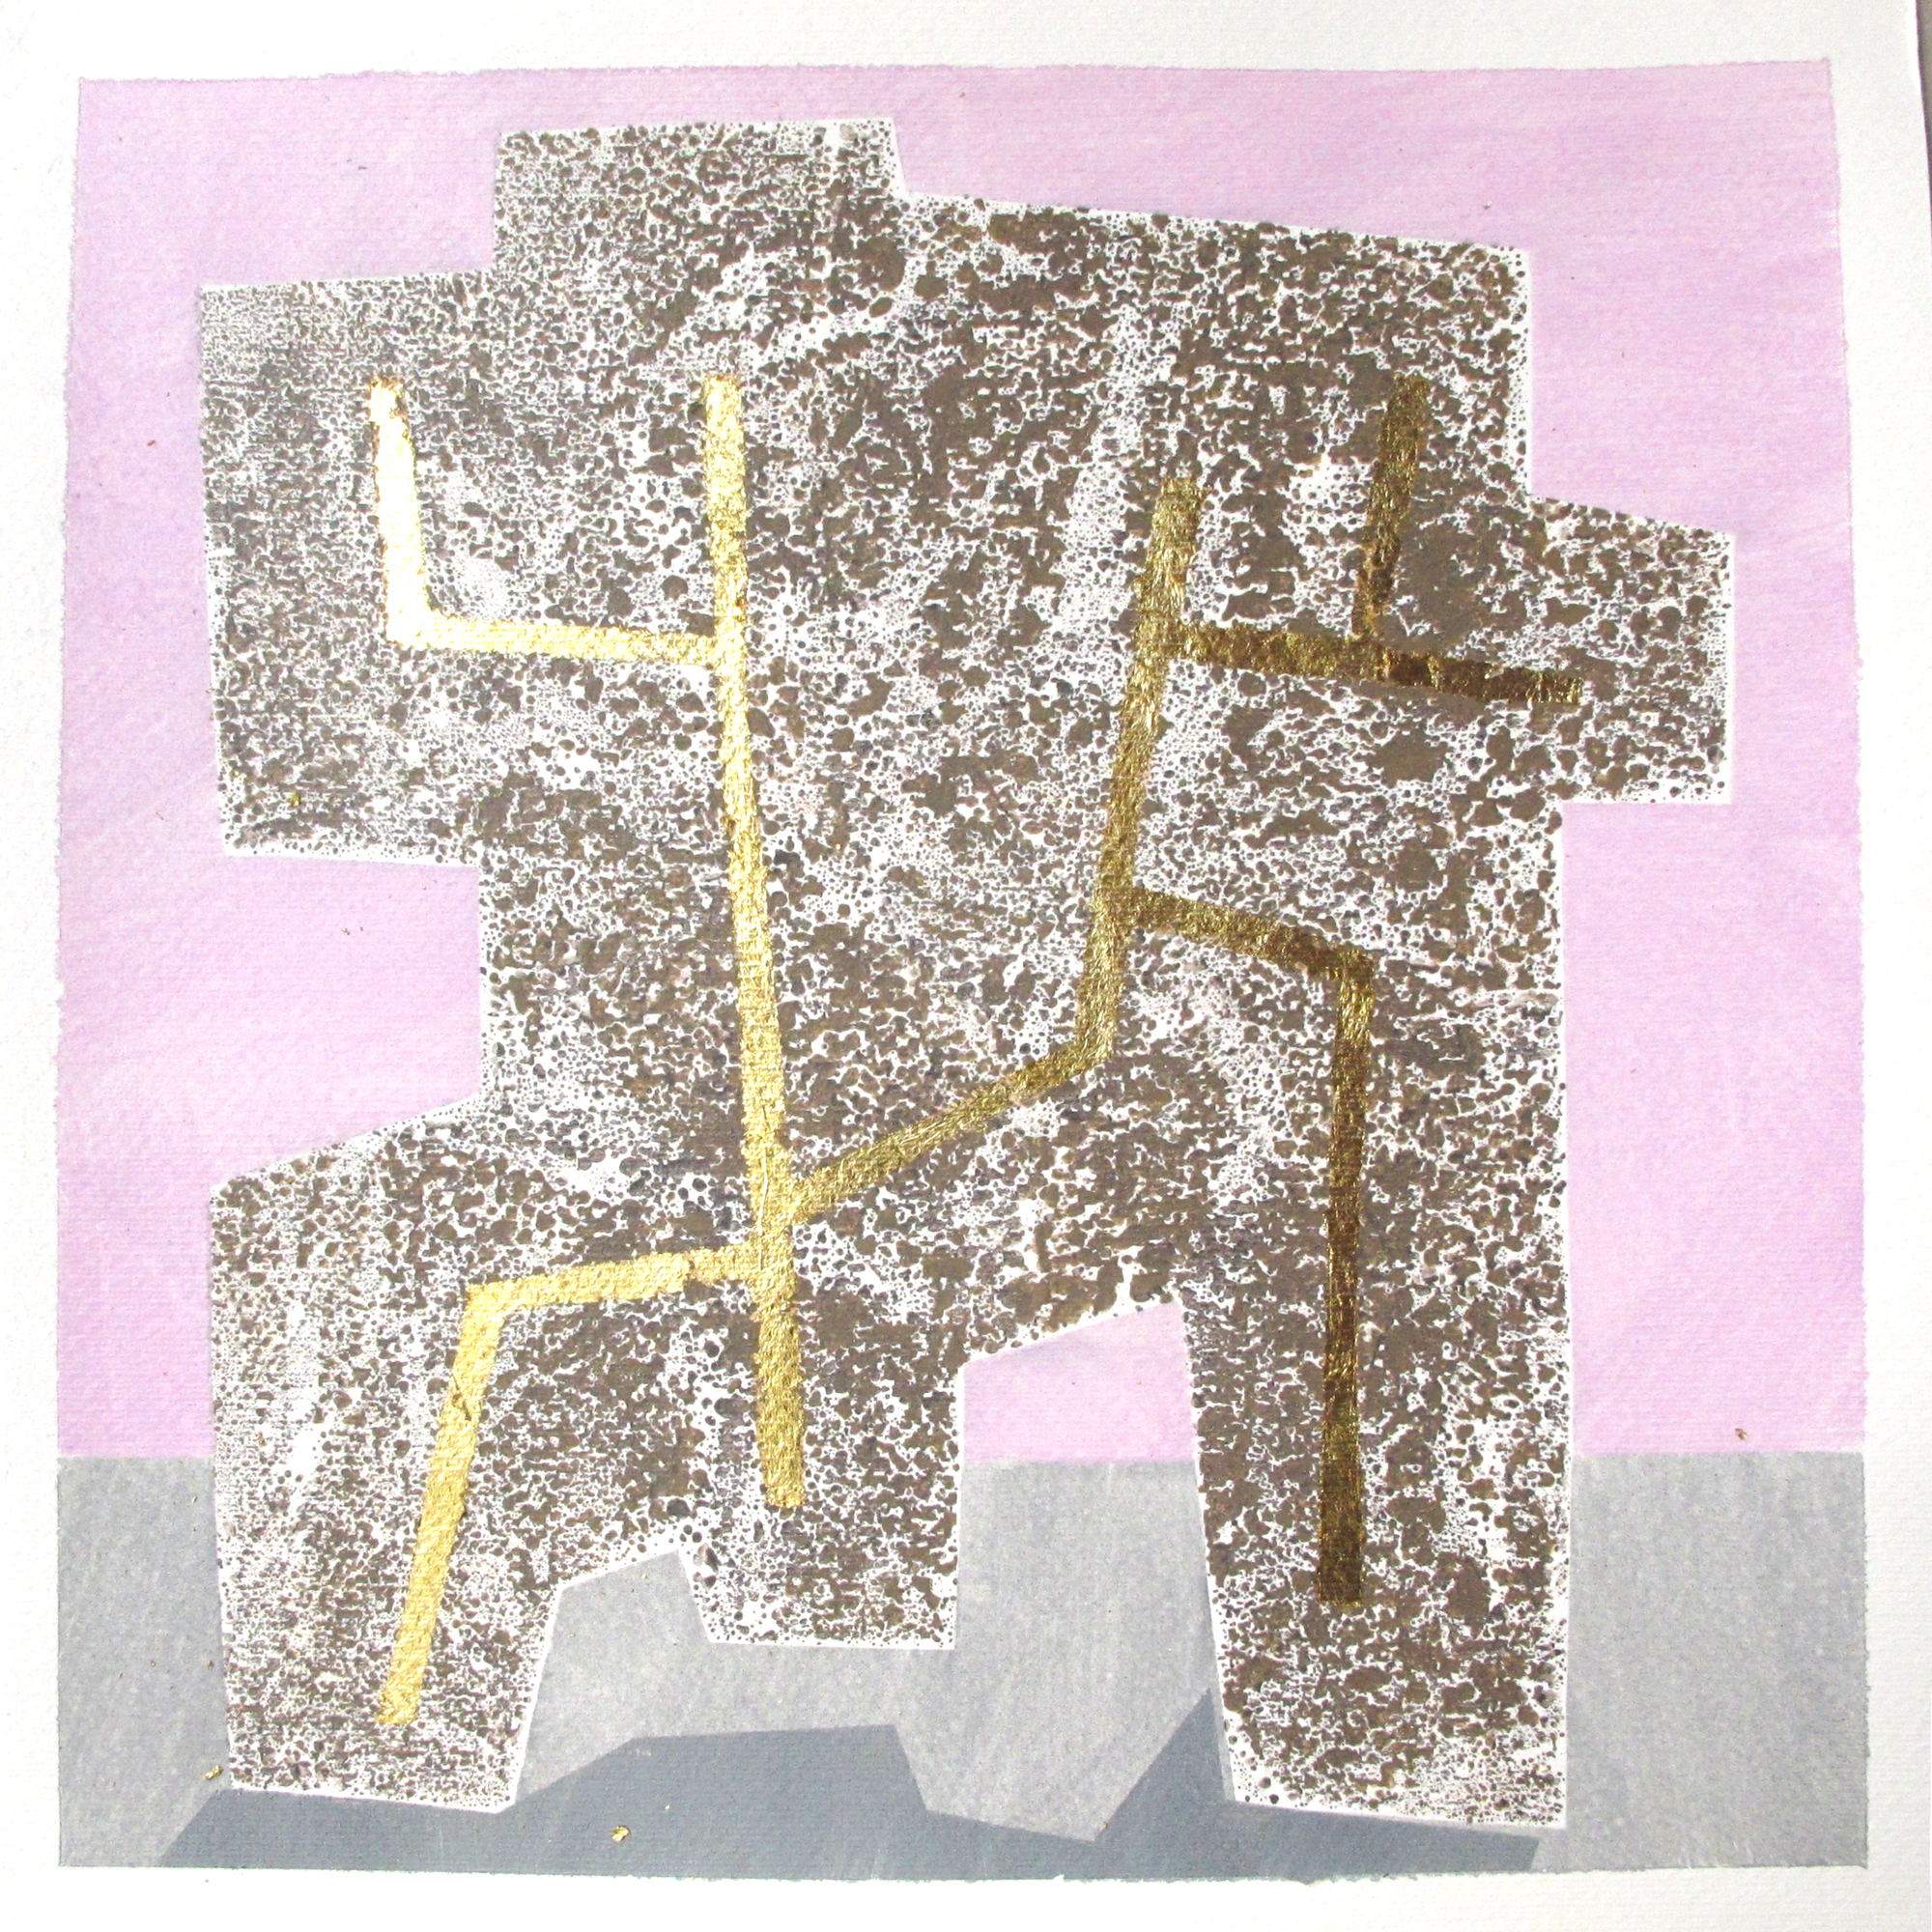  Serien "Frukt og robot"  2011. 40 x 40, Gummitempera og metall på papir 